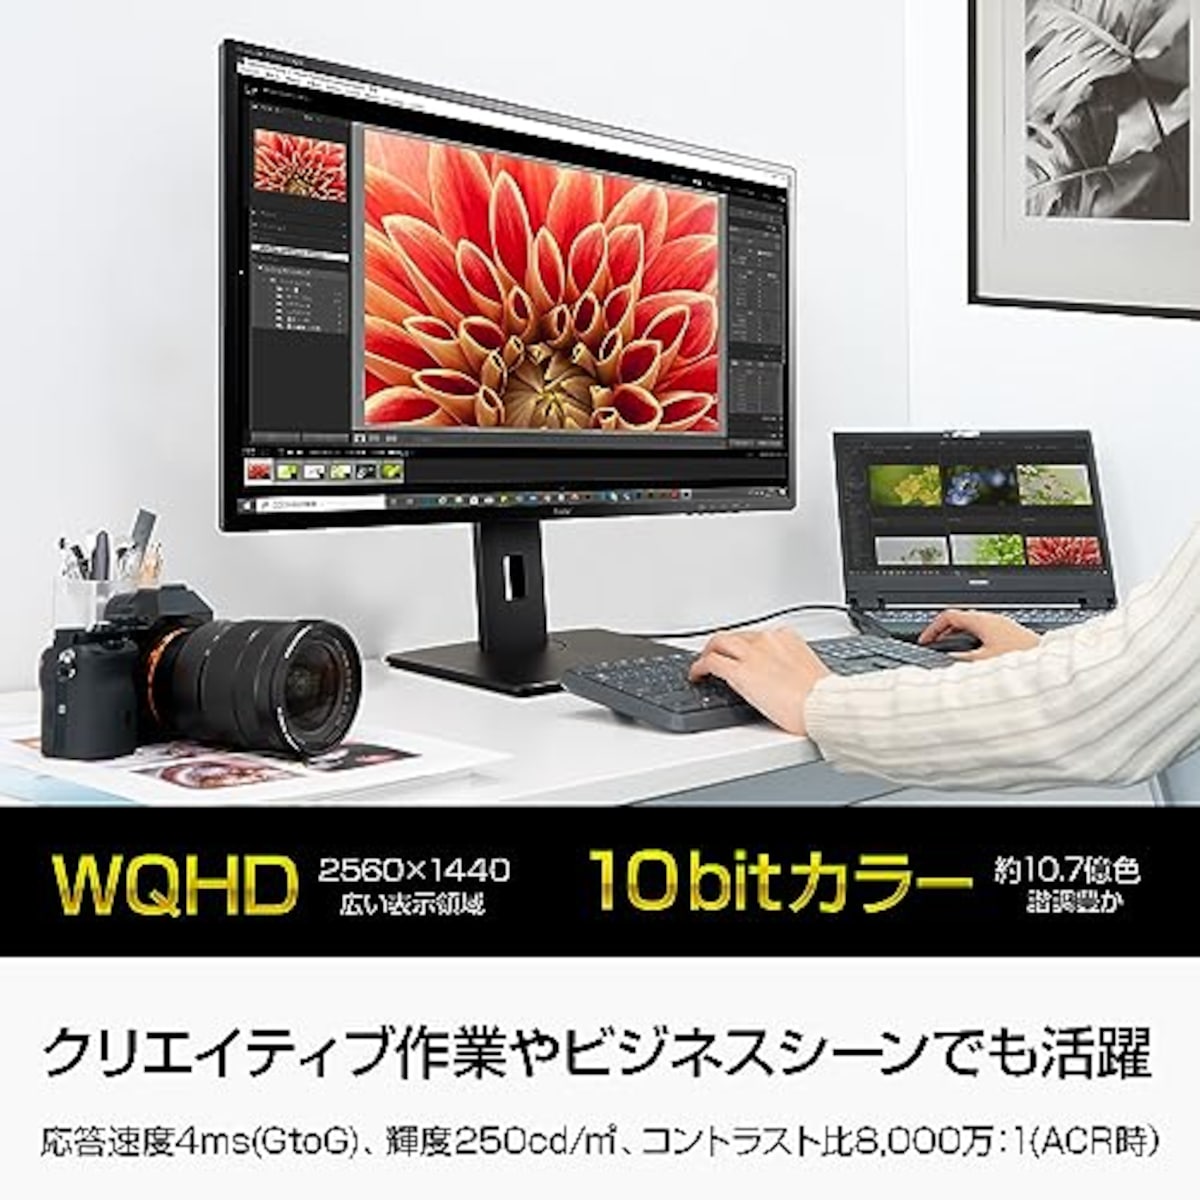  マウスコンピューター iiyama モニター ディスプレイ 31.5インチ WQHD 2560×1440 IPS方式 高さ調整 角度調整 HDMI DisplayPort DVI-D 全ケーブル付 3年保証 国内サポート XB3270QS-B5画像3 